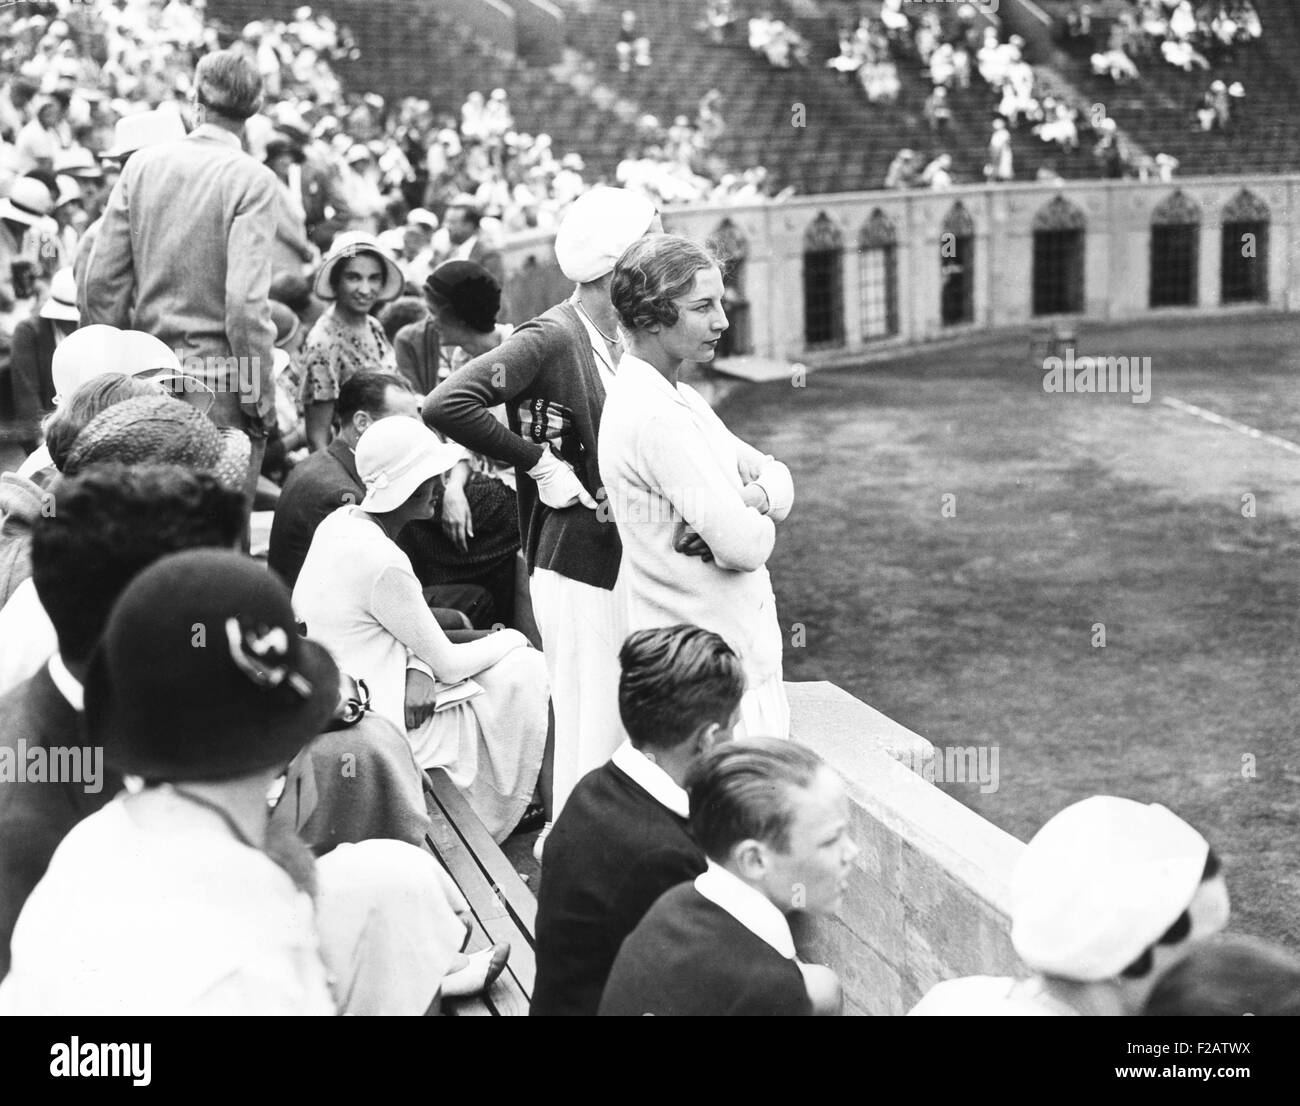 Helen Wills Moody viendo tennis match en Forest Hills, Long Island, el 20 de agosto de 1931. Wills Moody ganó su estadounidense femenino de tenis individual final contra el jugador británico, Eileen Bennett Whittingstall. (CSU 2015 11 1575) Foto de stock